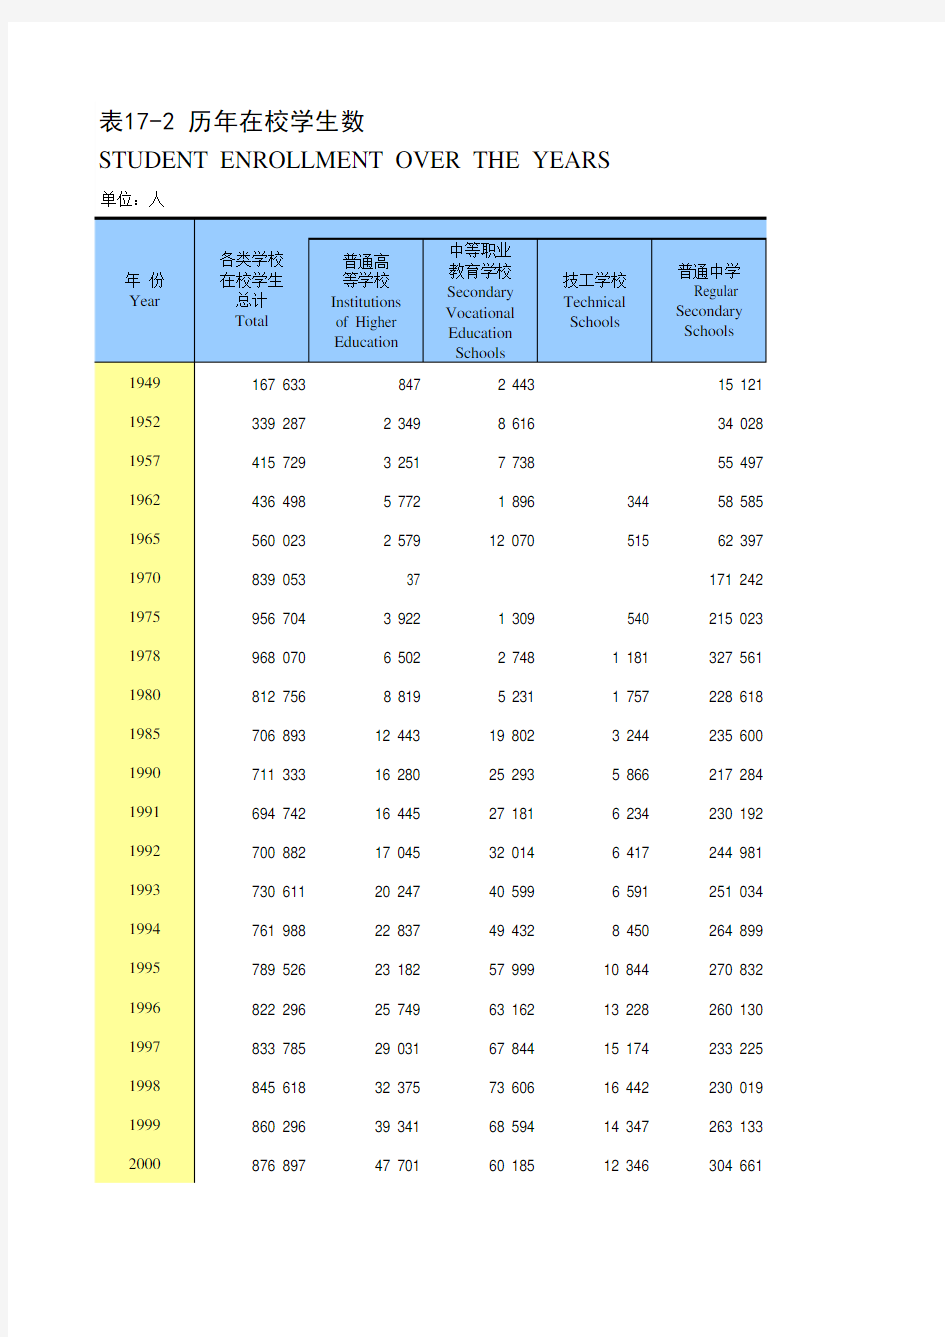 江苏省苏州市统计年鉴社会经济发展指标数据：17-2 历年在校学生数(1949-2018)